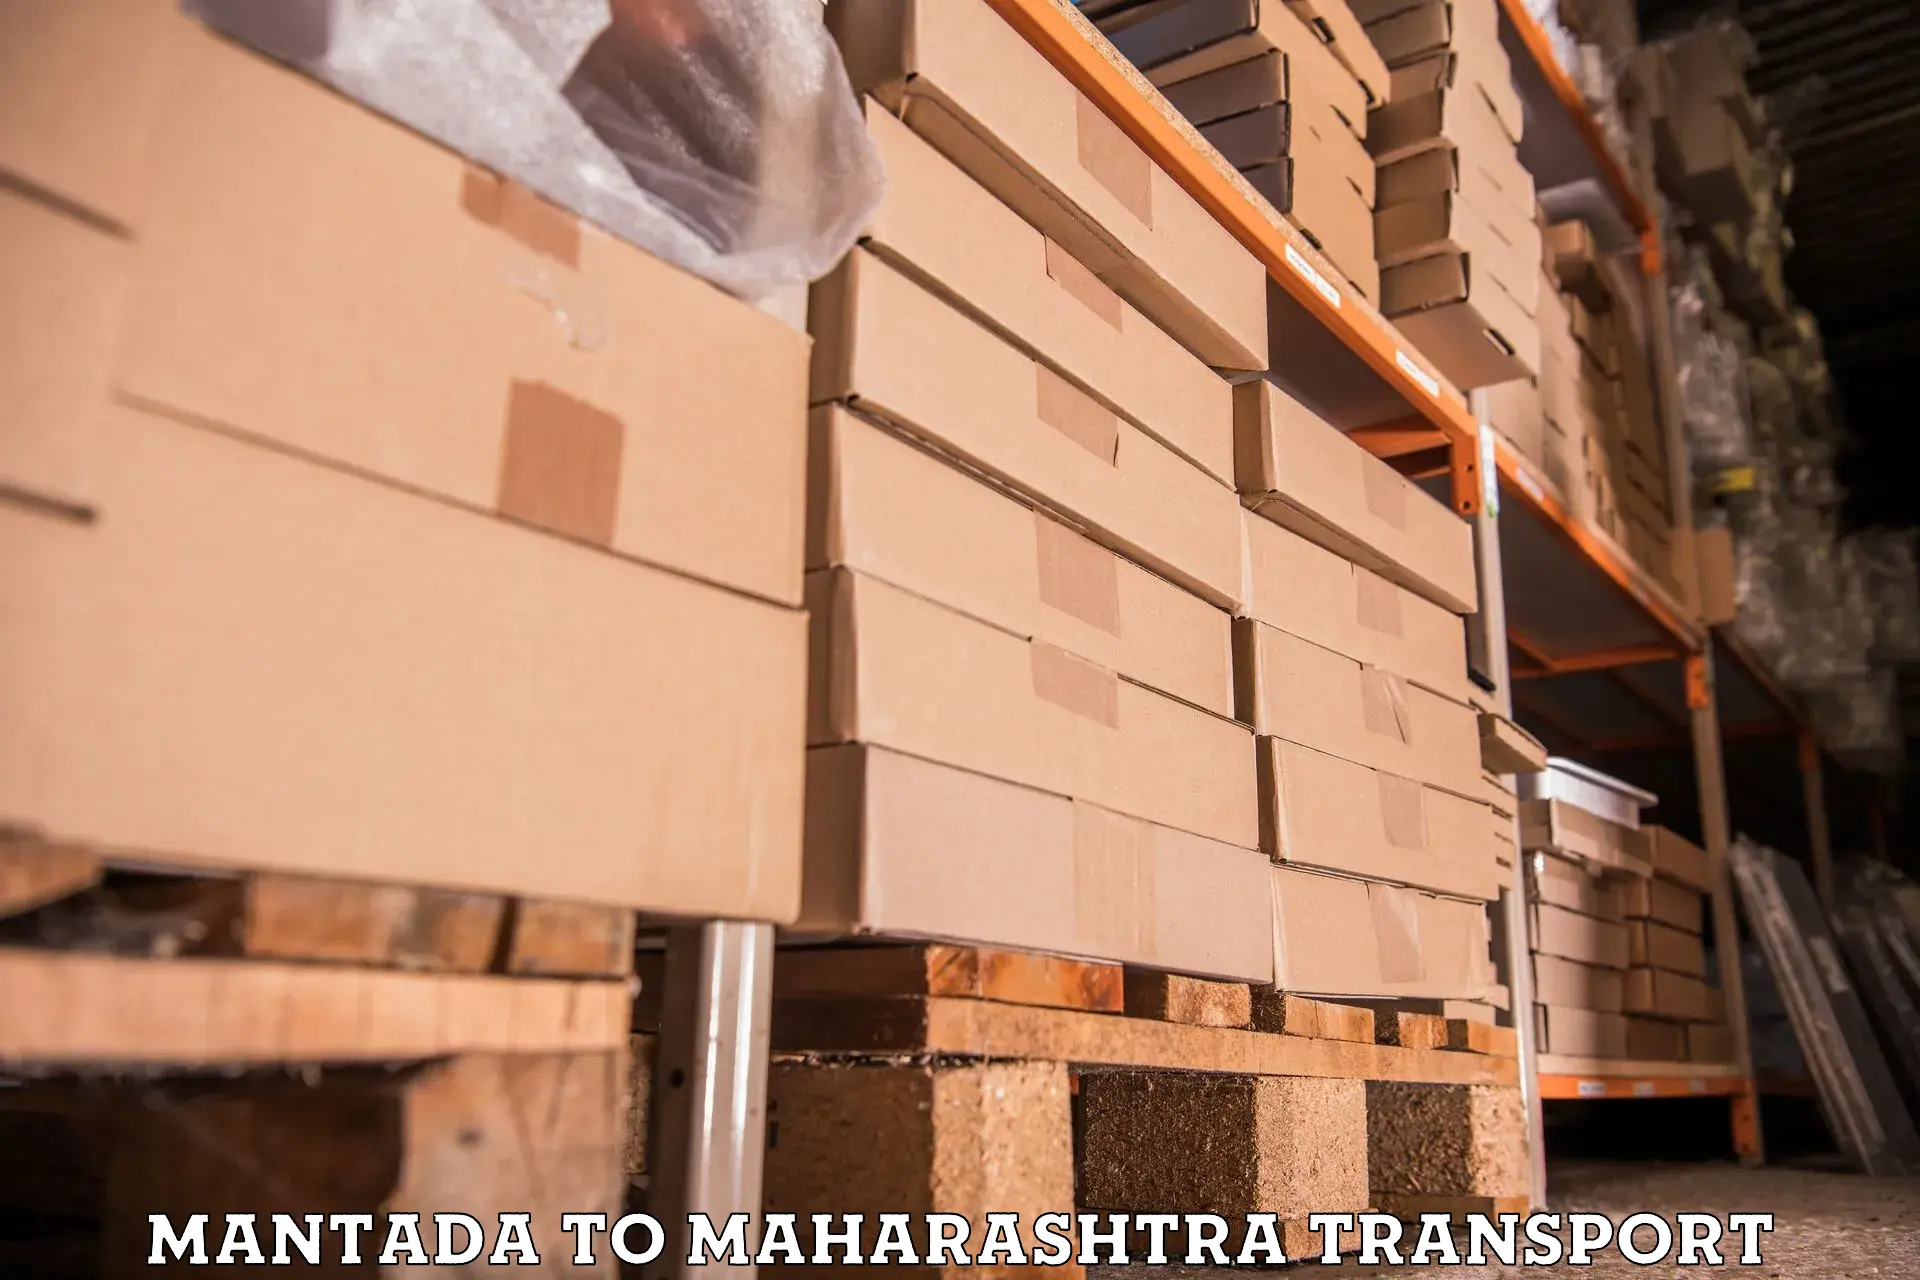 Container transportation services Mantada to Mahim